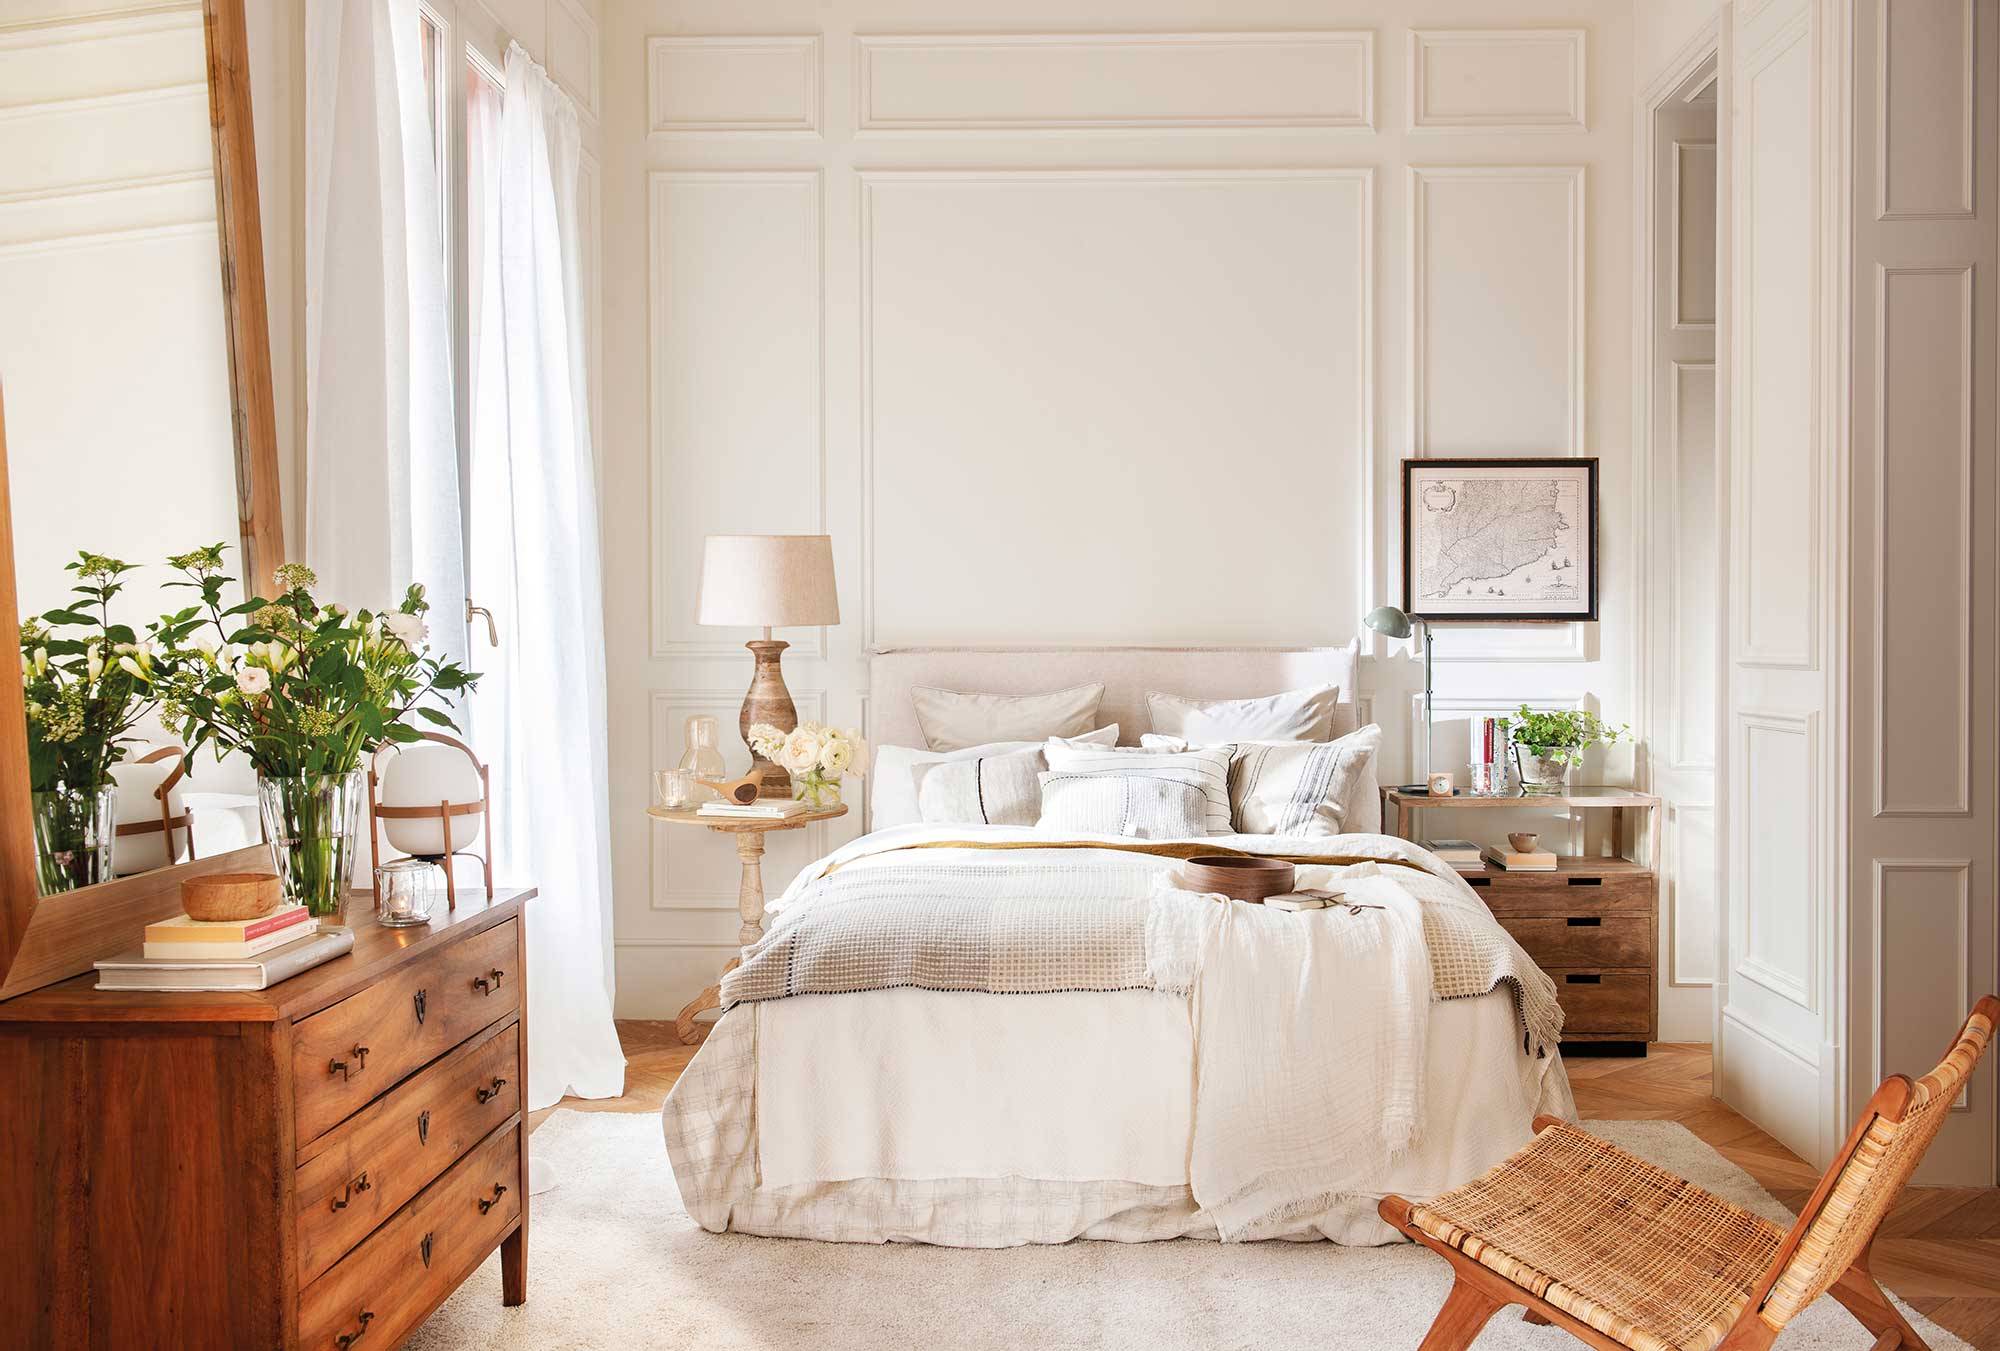 Dormitorio clásico con molduras en blanco_00501537